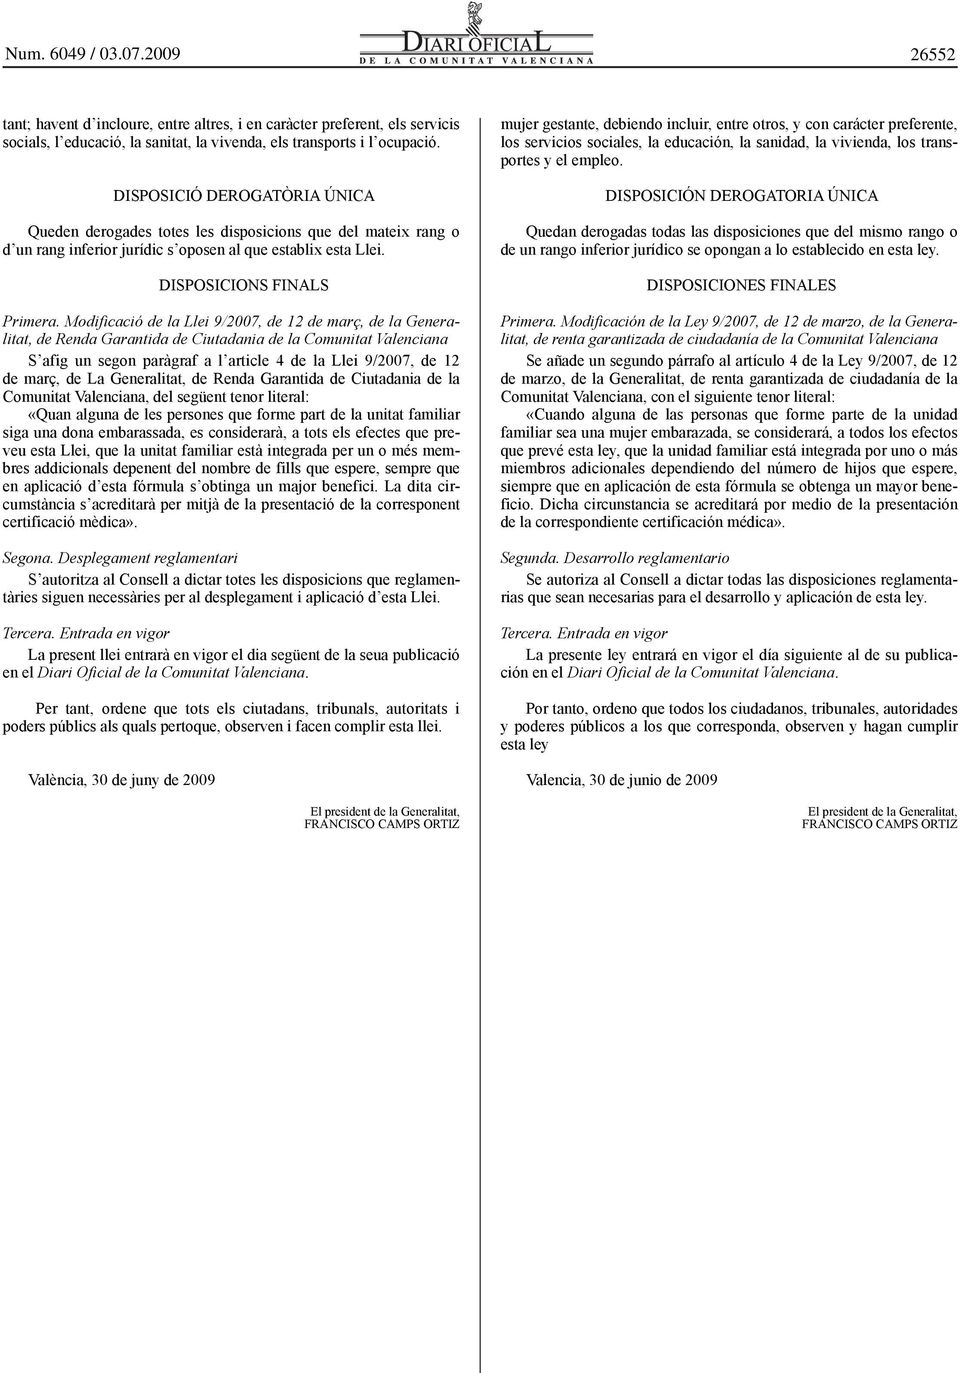 Modificació de la Llei 9/2007, de 12 de març, de la Generalitat, de Renda Garantida de Ciutadania de la Comunitat Valenciana S afig un segon paràgraf a l article 4 de la Llei 9/2007, de 12 de març,